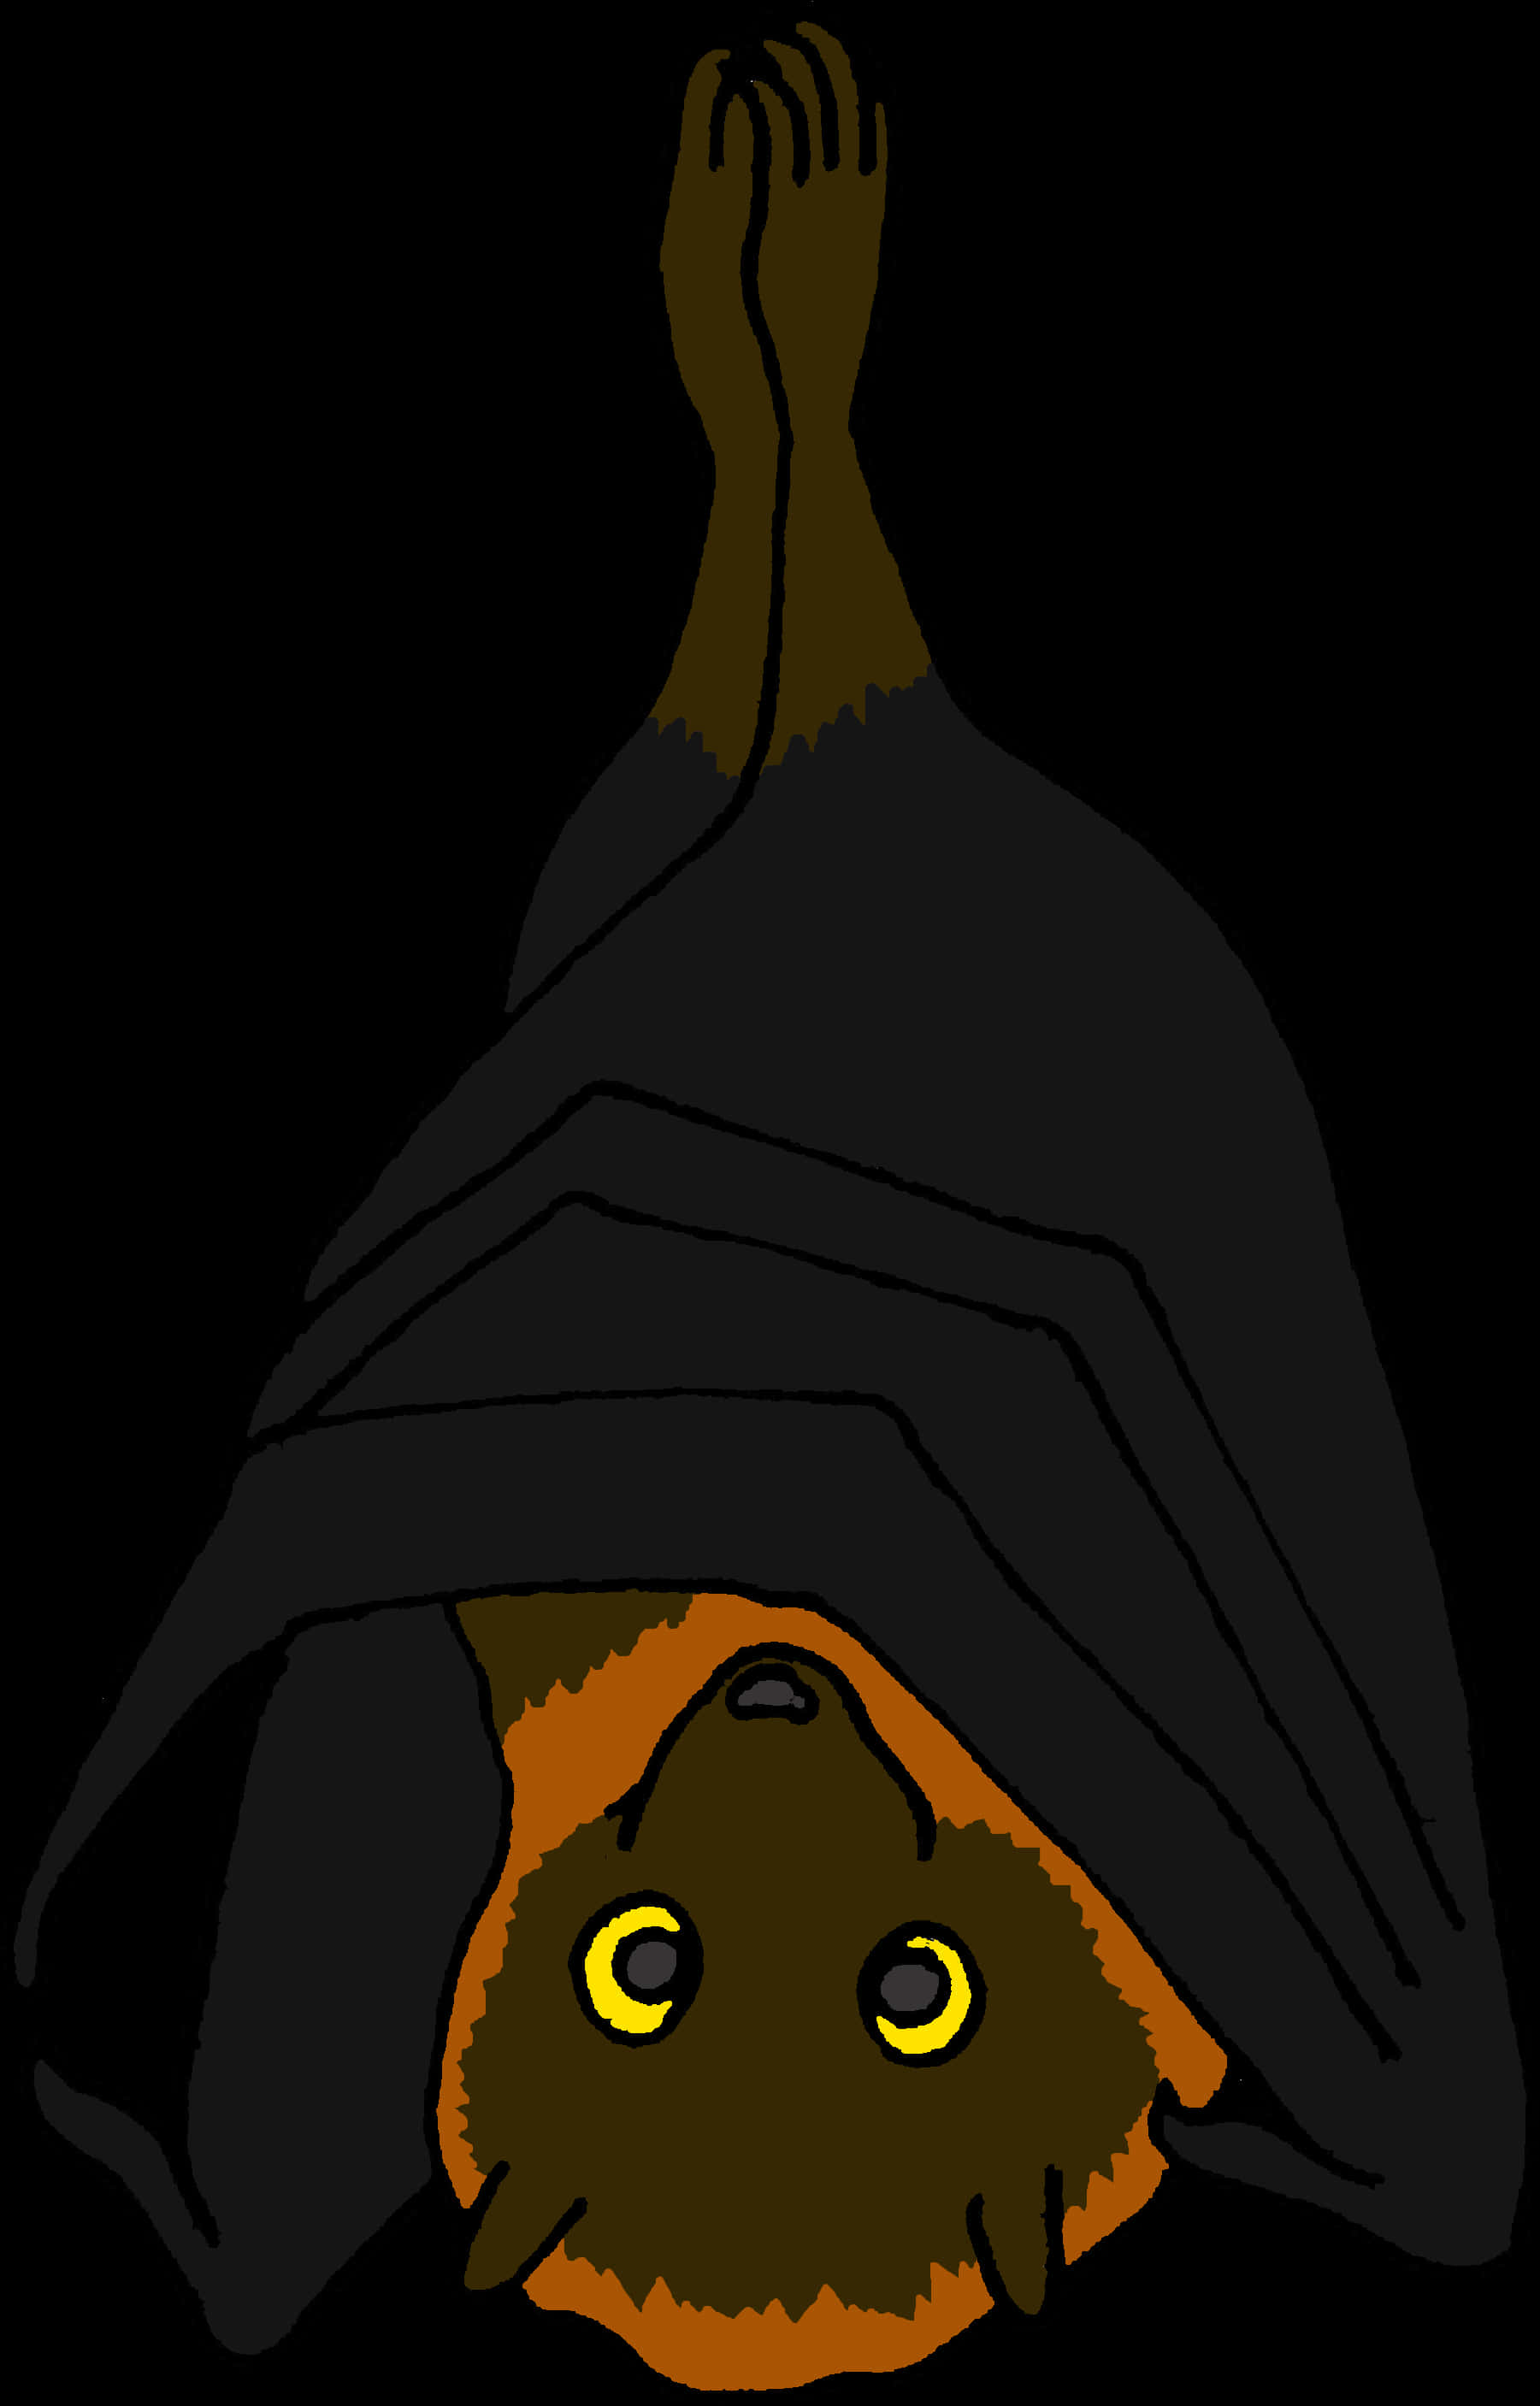 A Bat In A Black Robe